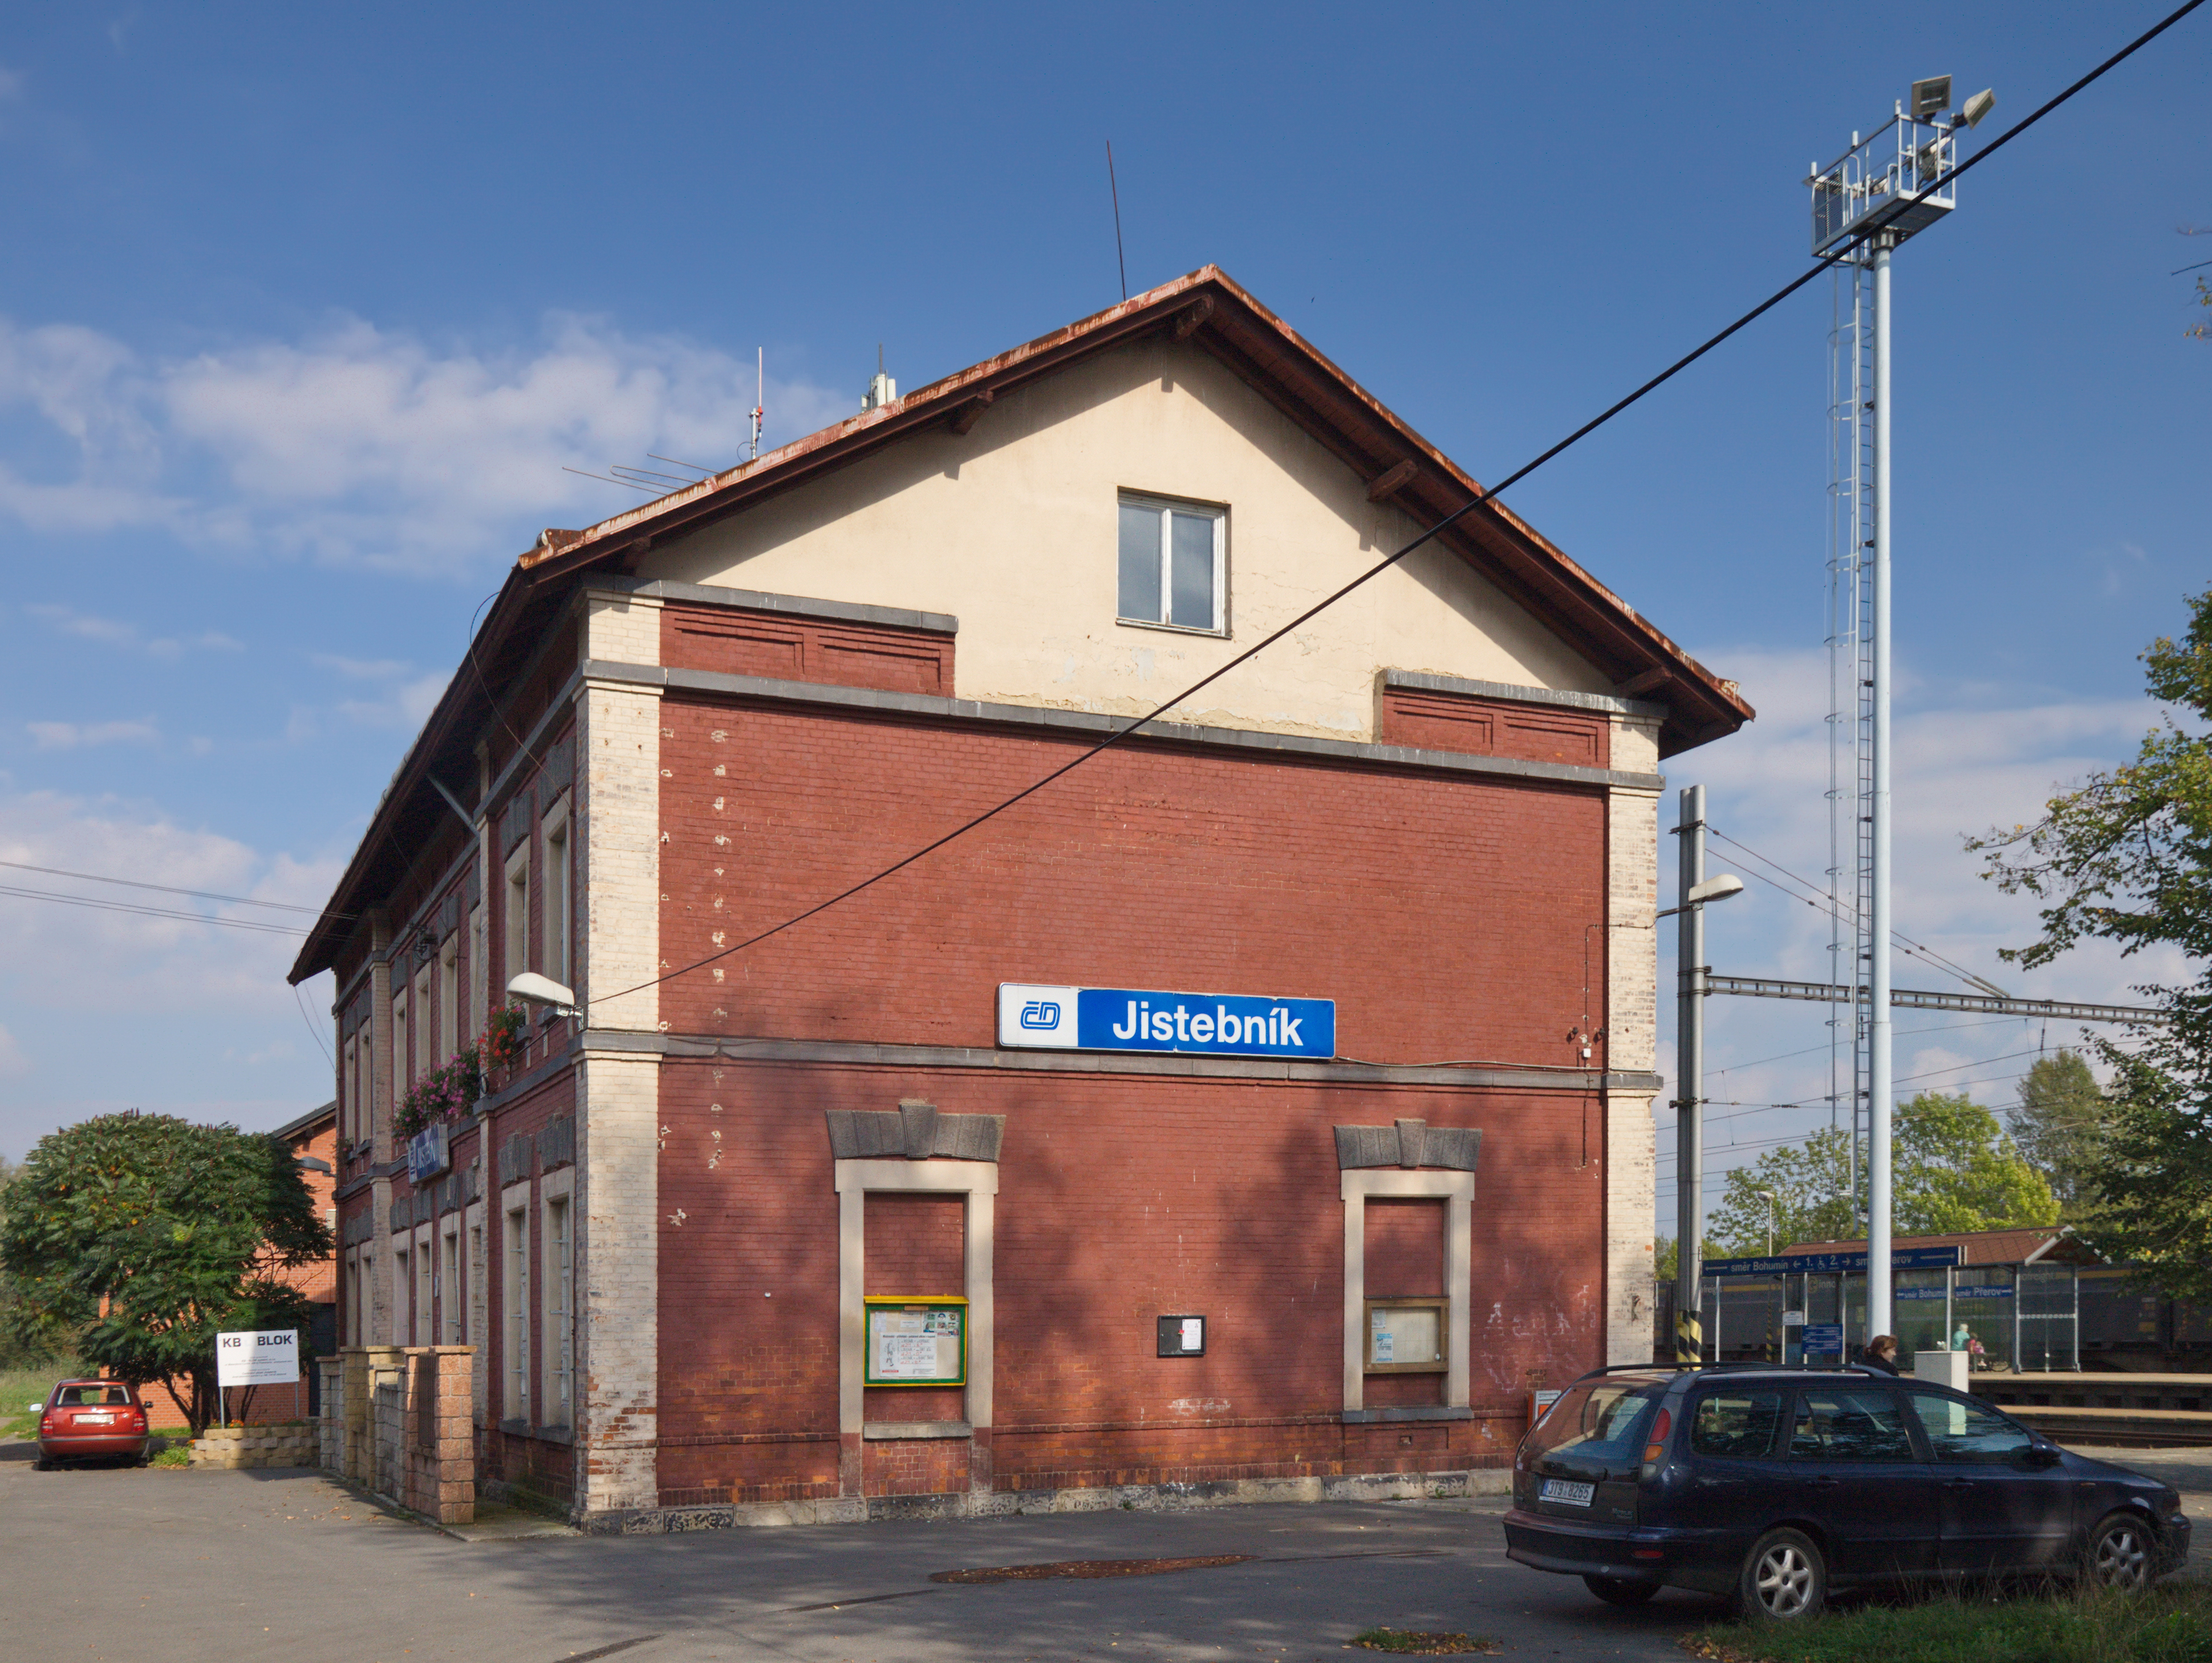 2014 Jistebník, Stacja kolejowa 02